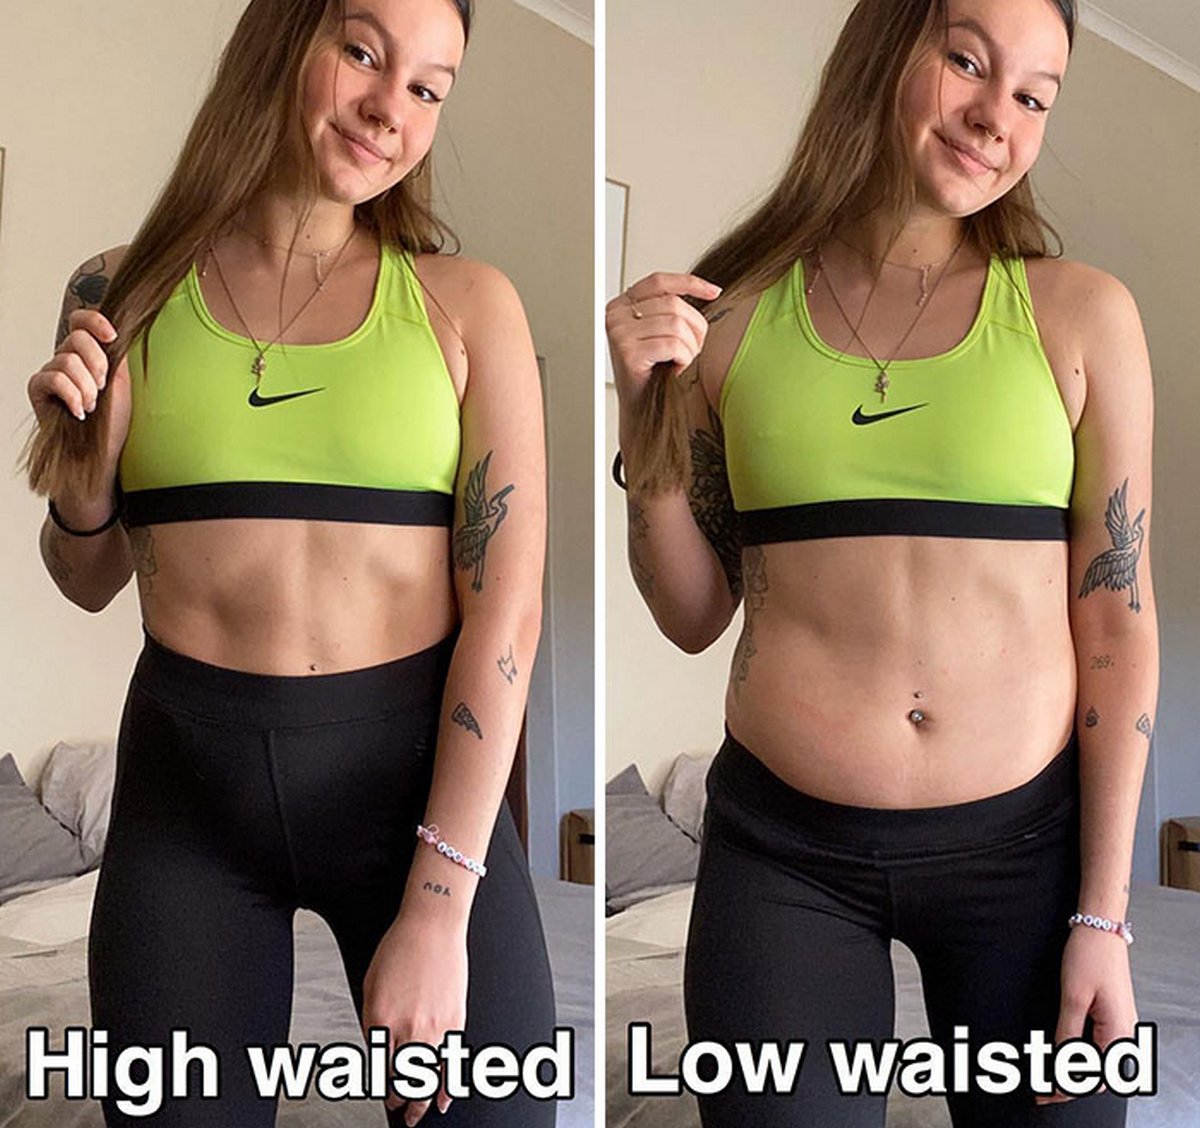 Cette femme est devenue virale pour avoir rappelé aux gens à quoi ressemblent les vrais corps en partageant ces photos côte à côte